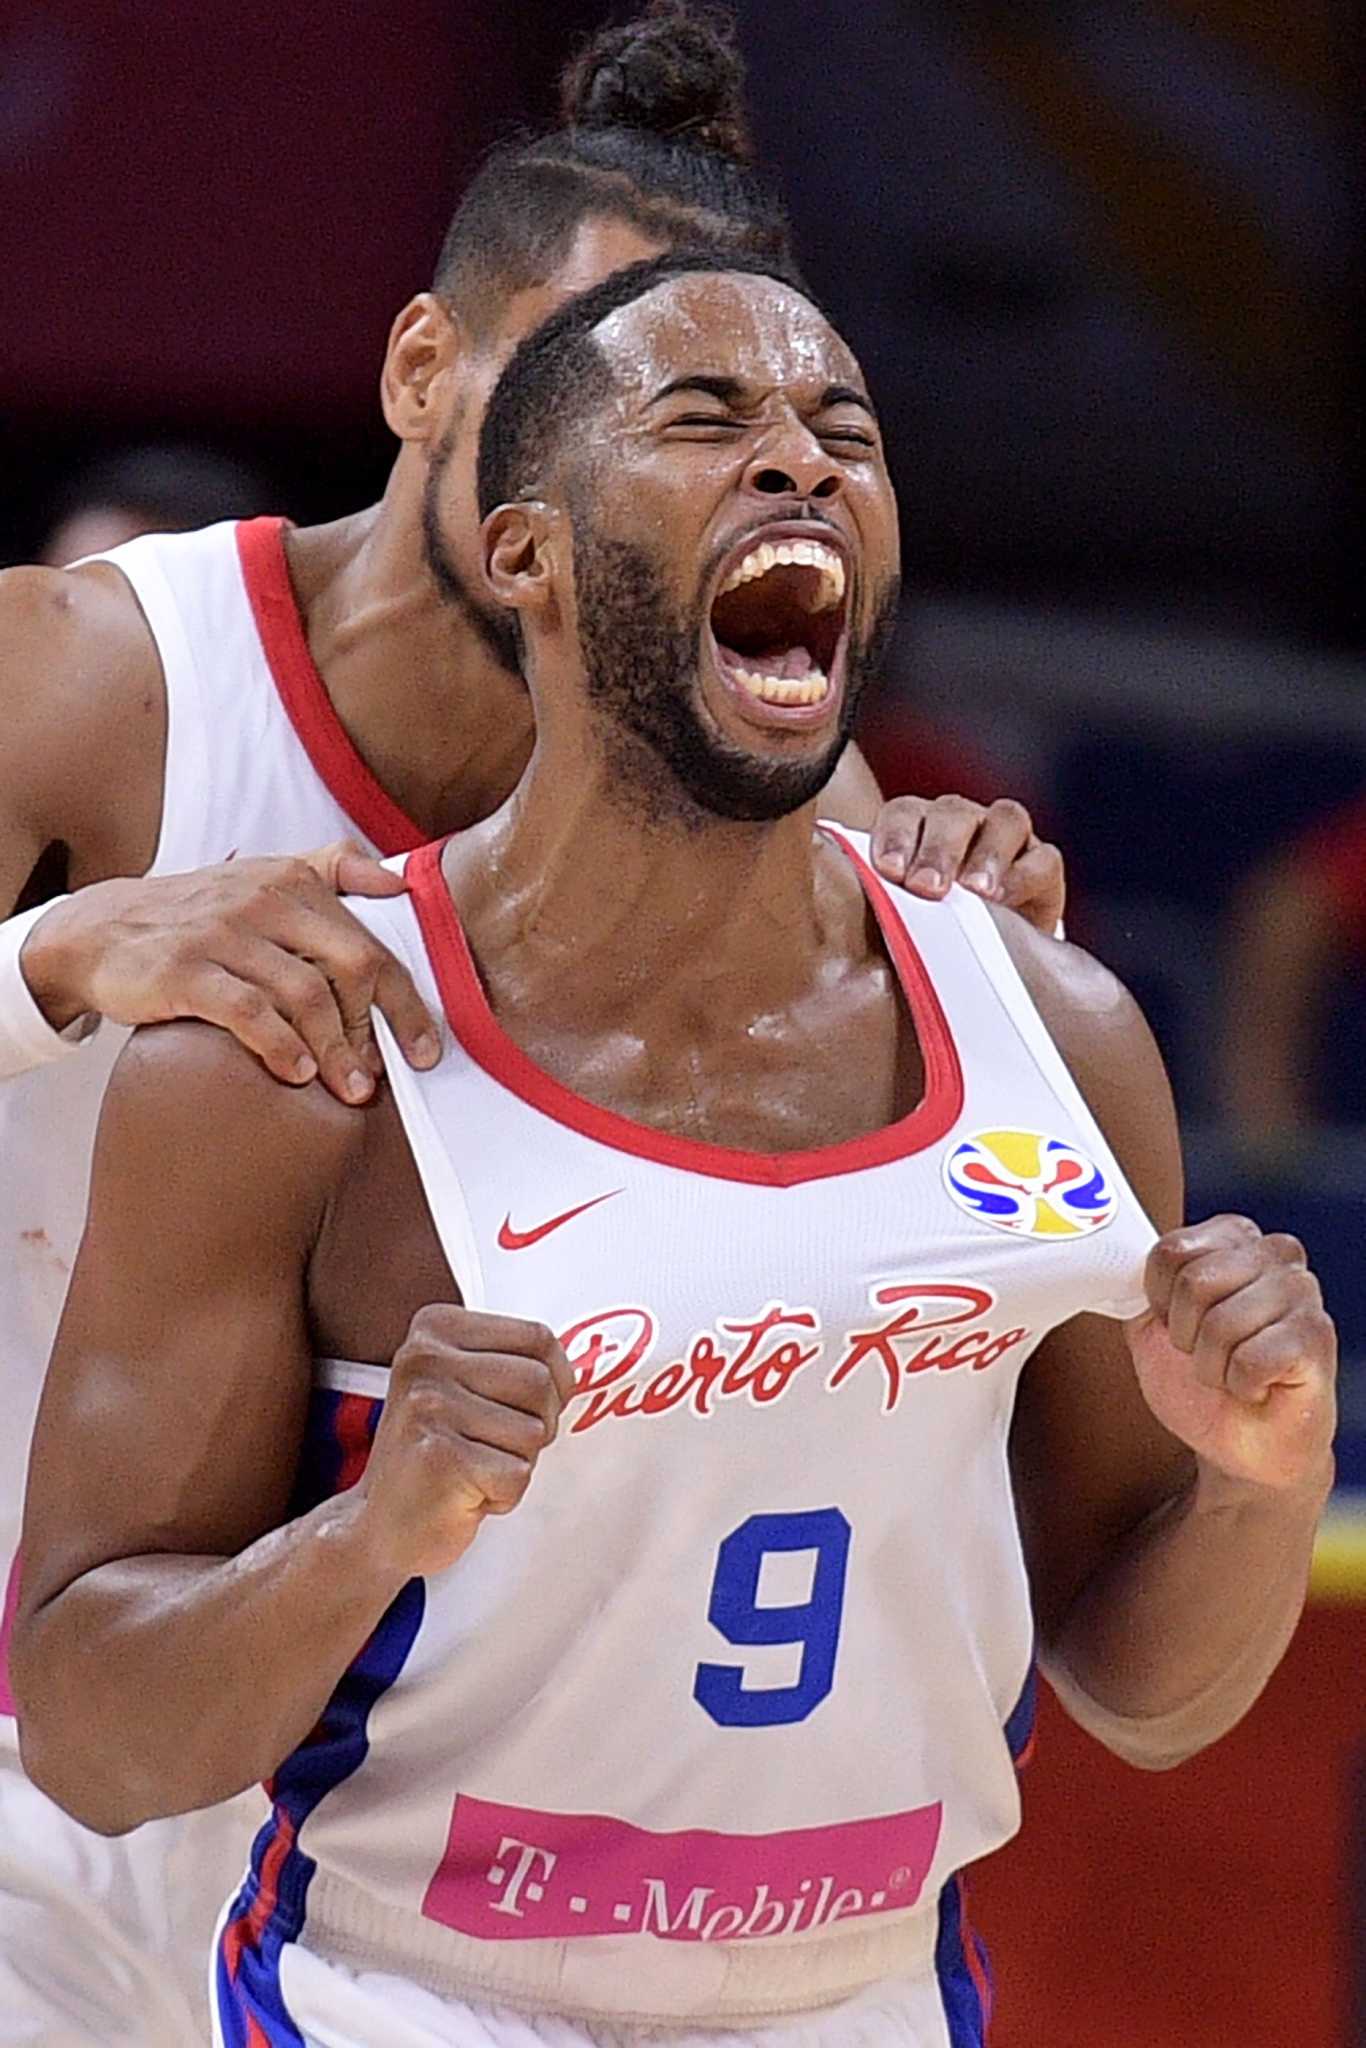 Puerto Rico rises at basketball World Cup